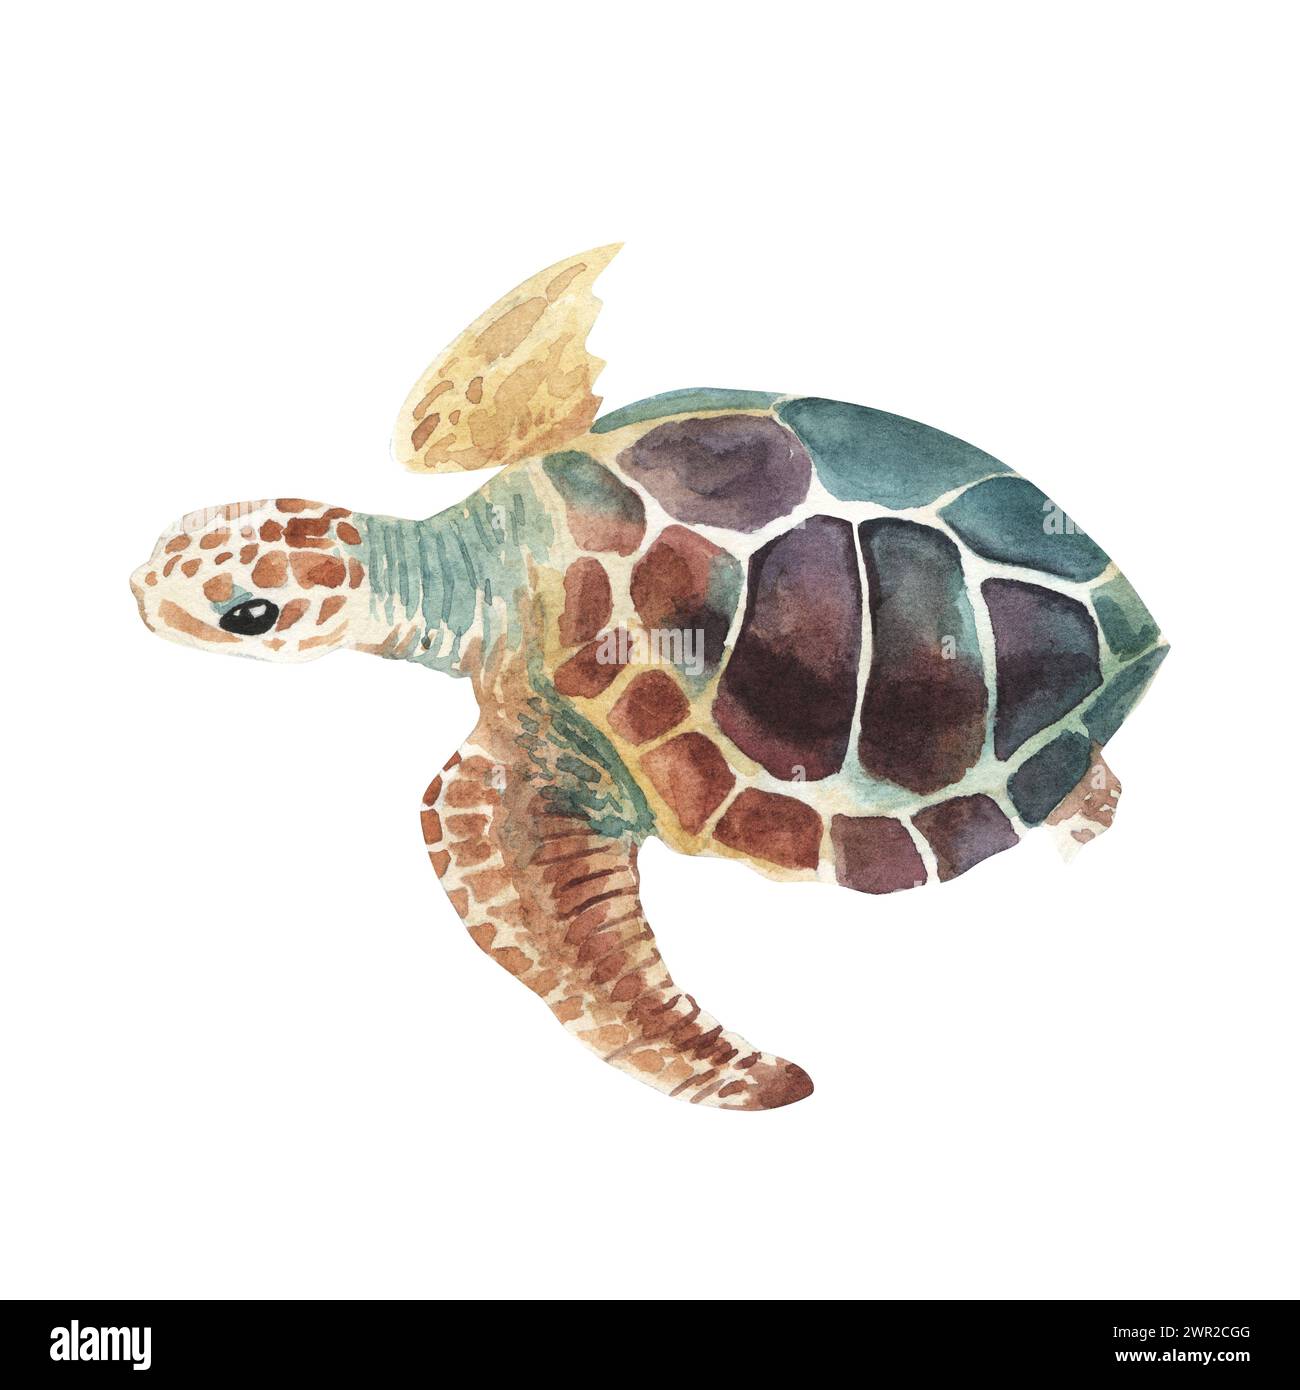 Tortue de mer. Dessin réaliste, artistique et coloré d'une tortue de mer sur un fond blanc dans un style aquarelle. Tortue de mer Turquoise Oceanlife Art Banque D'Images